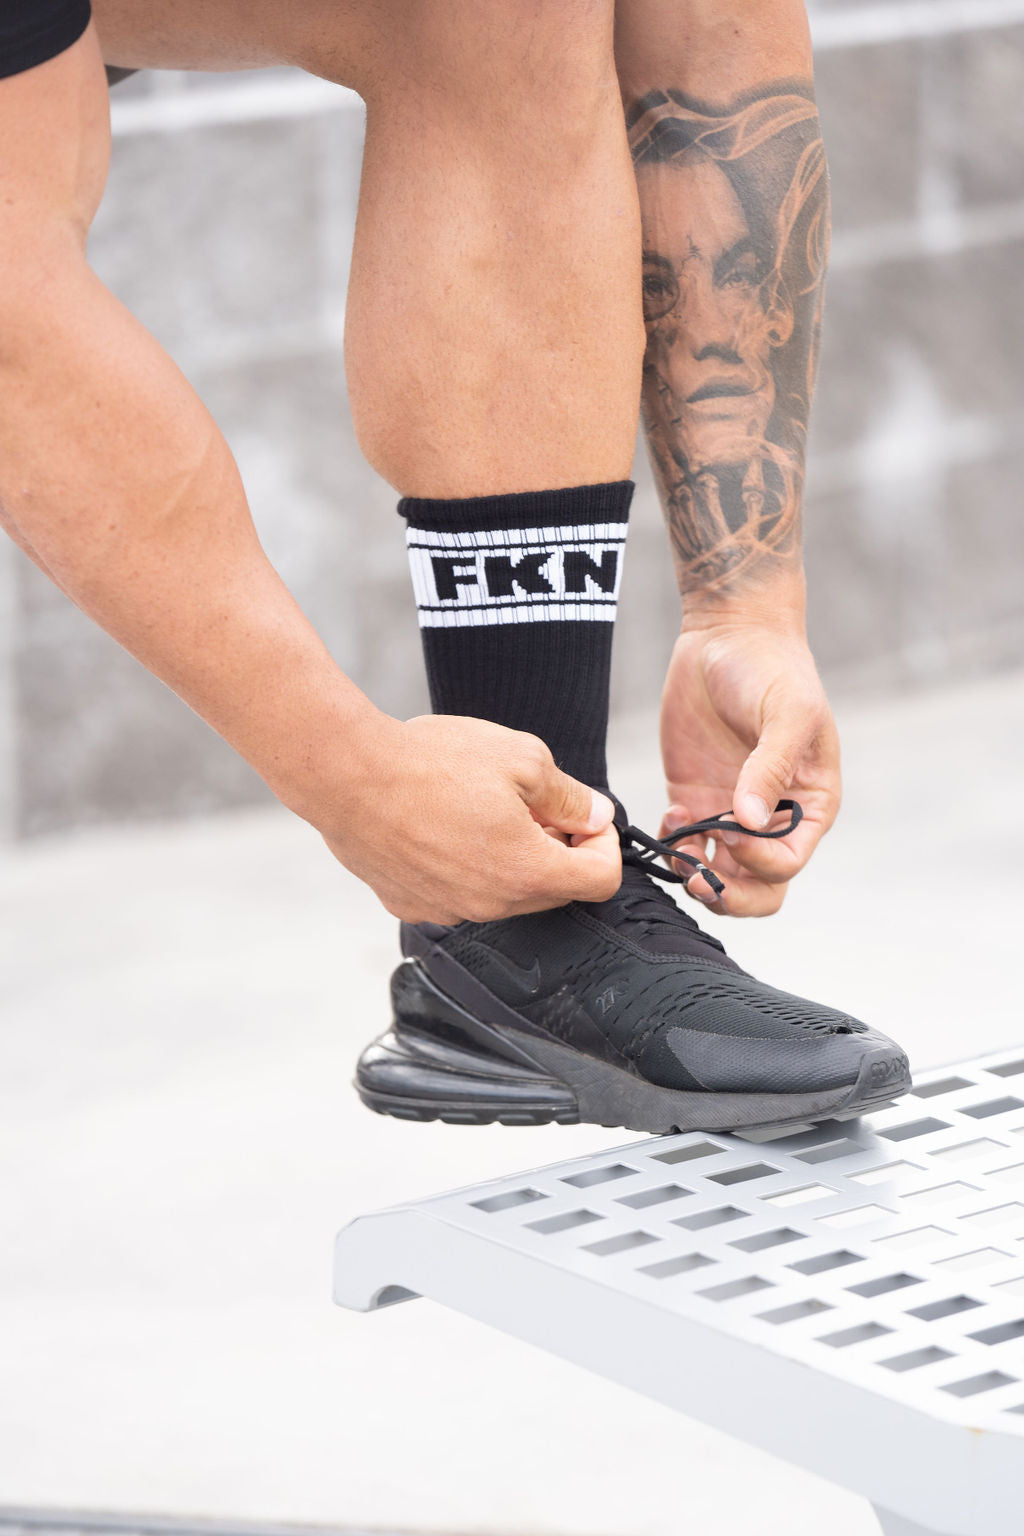 Porn In Socks - Sweat Wicking Gym Socks | FKN Gym Wear | Australia